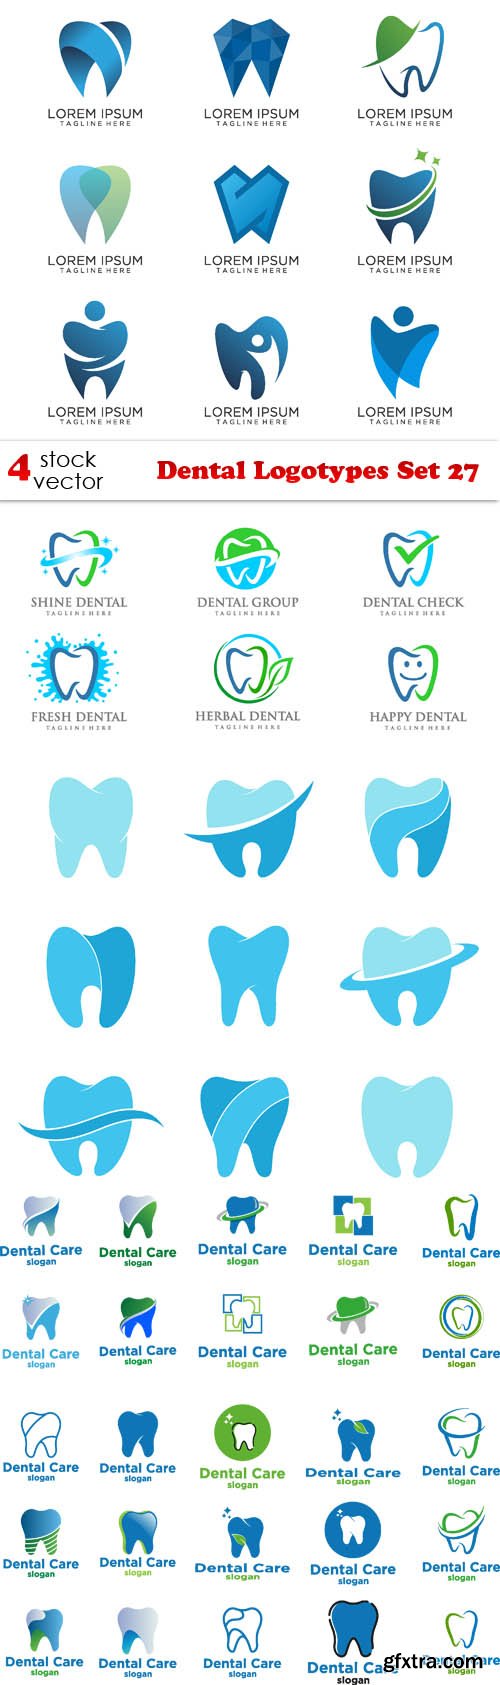 Vectors - Dental Logotypes Set 27